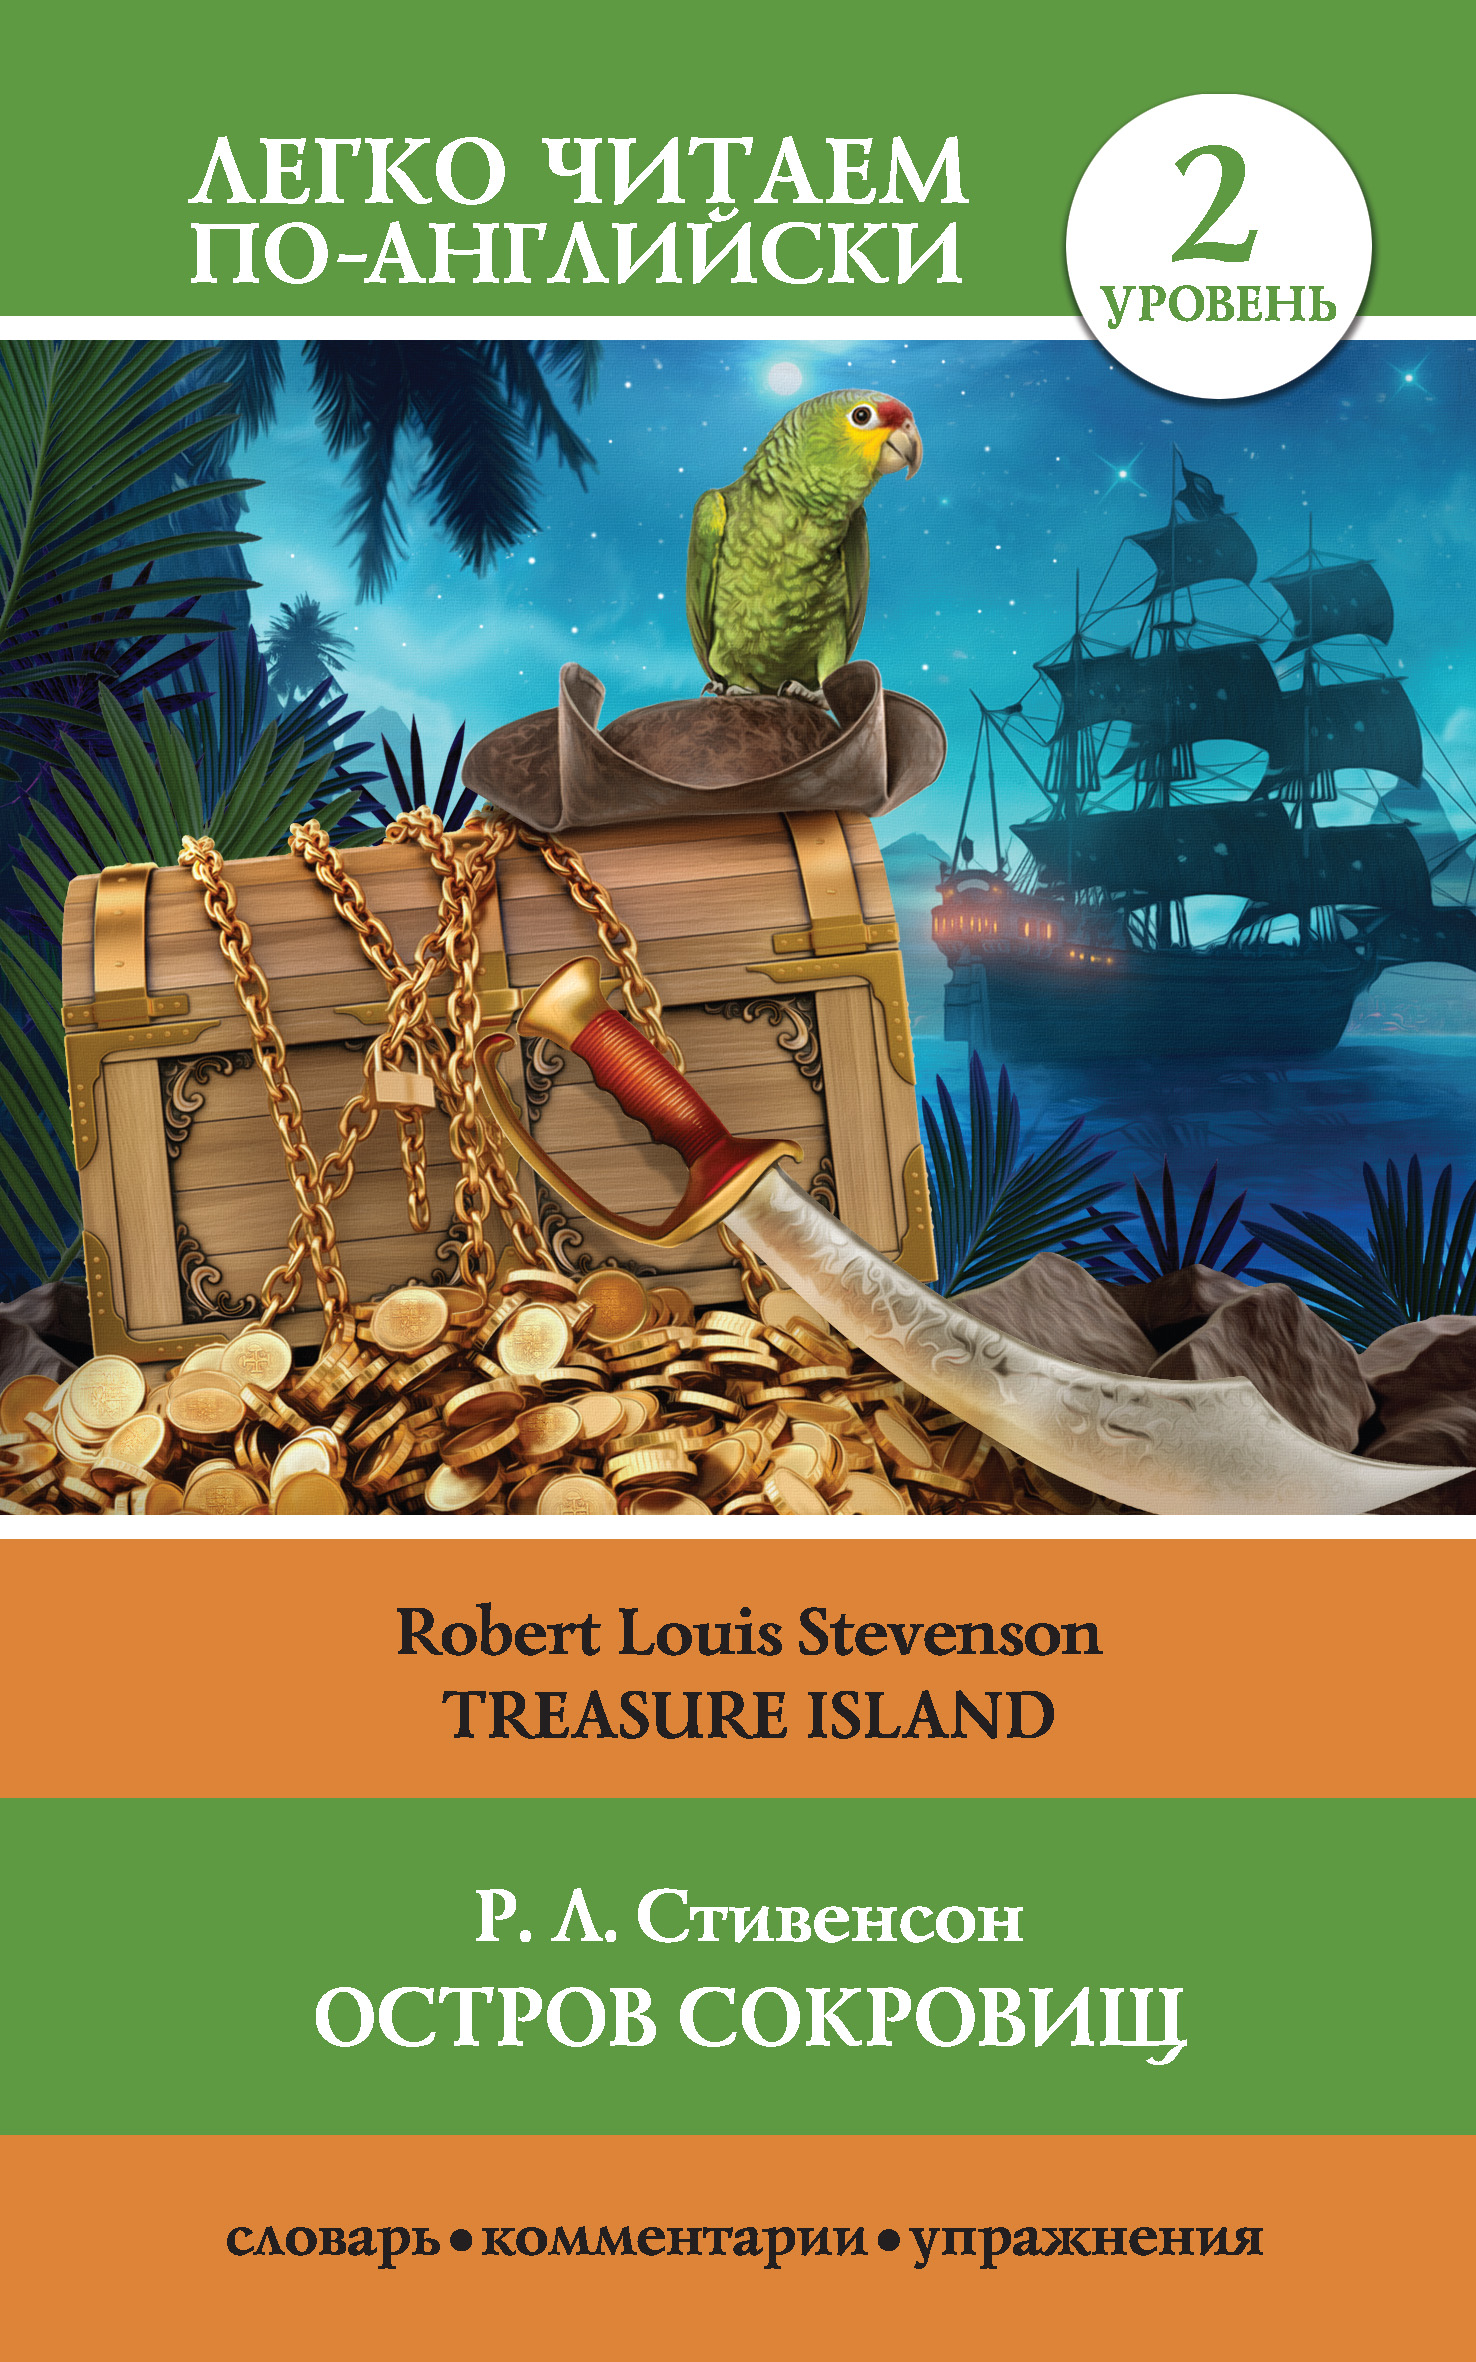 Книга Остров сокровищ / Treasure Island из серии , созданная Роберт Льюис Стивенсон, может относится к жанру Иностранные языки, Приключения: прочее, Литература 19 века, Зарубежная классика. Стоимость электронной книги Остров сокровищ / Treasure Island с идентификатором 38577345 составляет 119.00 руб.